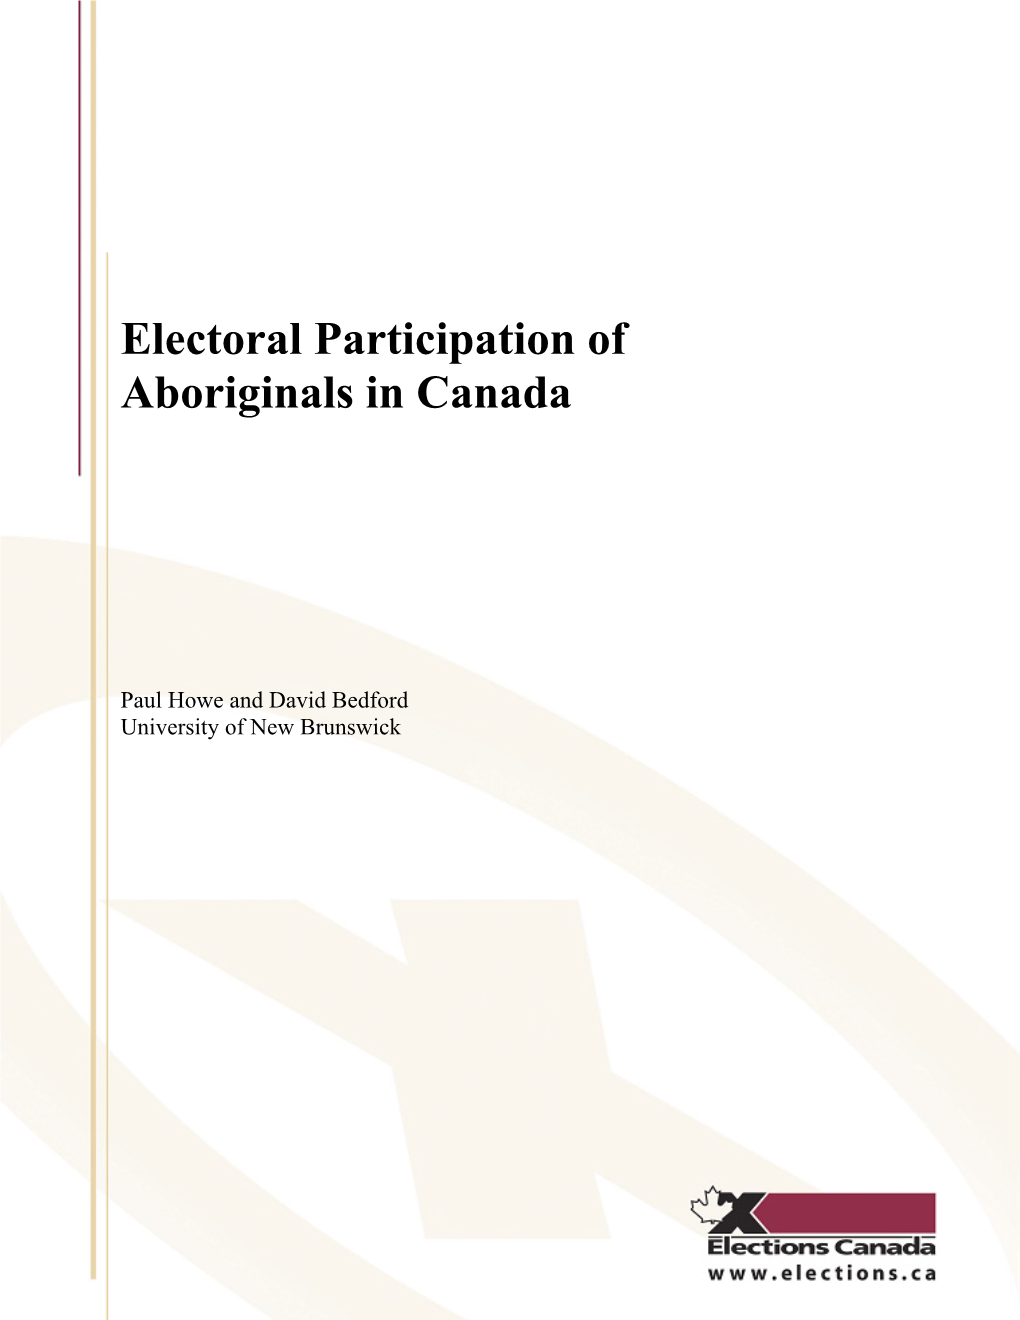 The Electoral Participation of Aboriginals in Canada